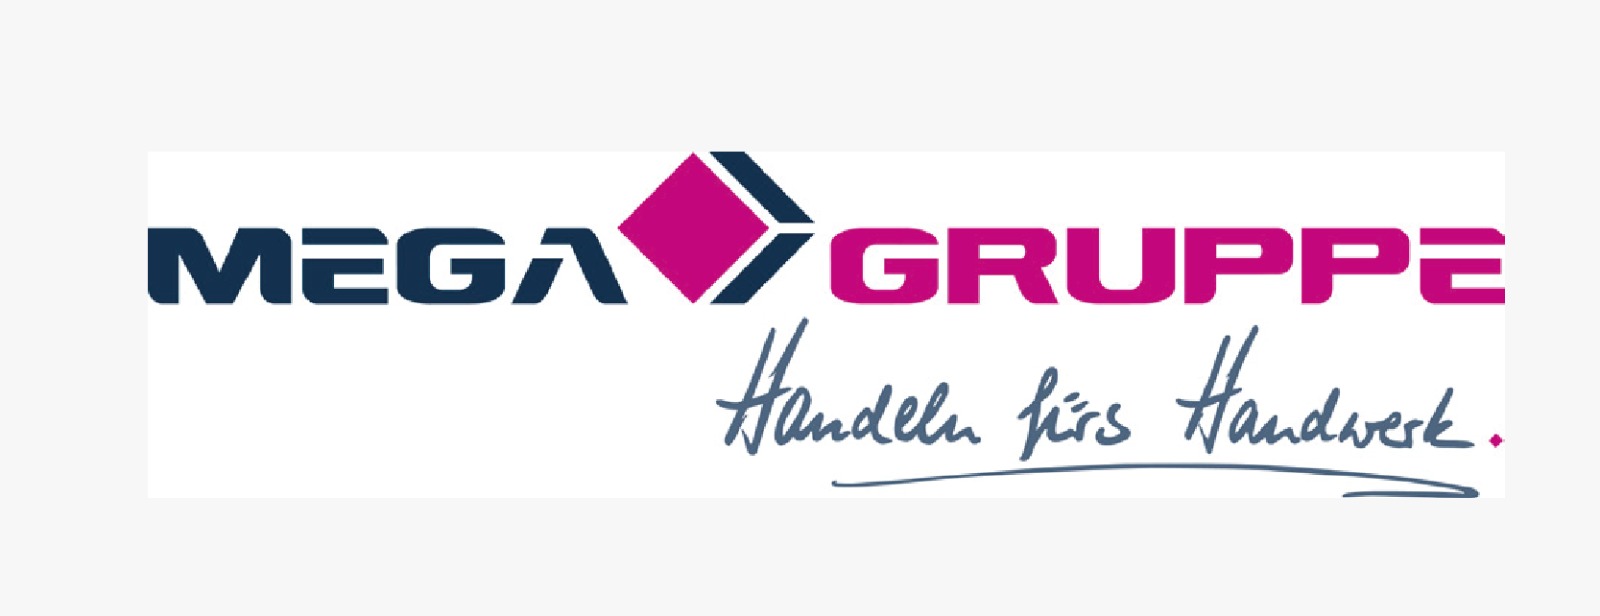 MEGA GRUPPE Handels fürs Handwerk bei KF Renovierungen